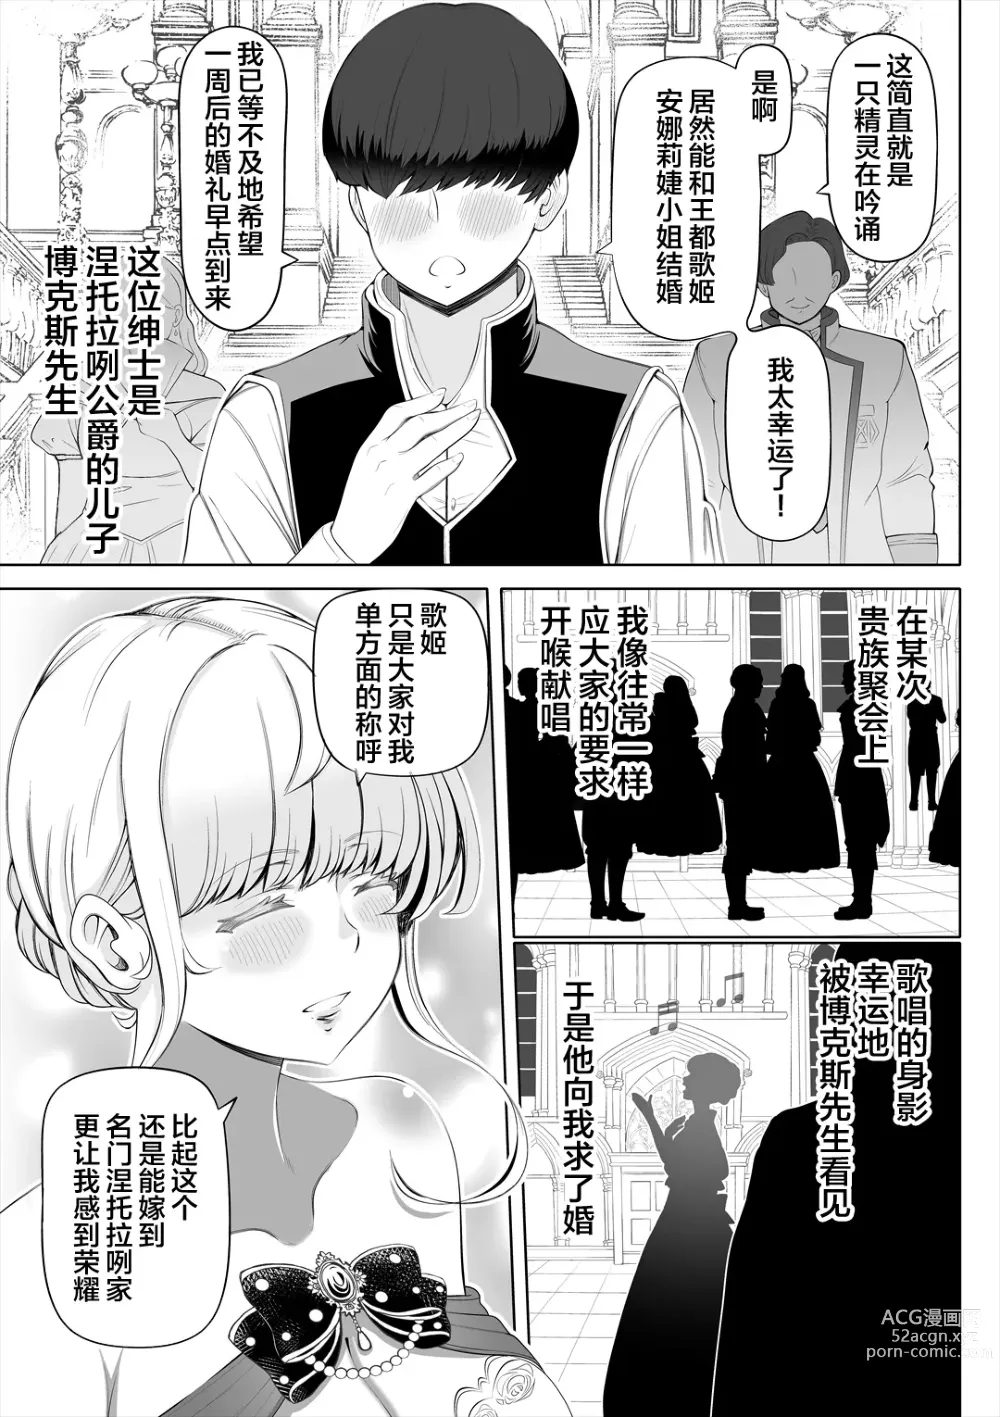 Page 6 of doujinshi Kyousei no hanayome 〜 kegareta chouritsu 〜